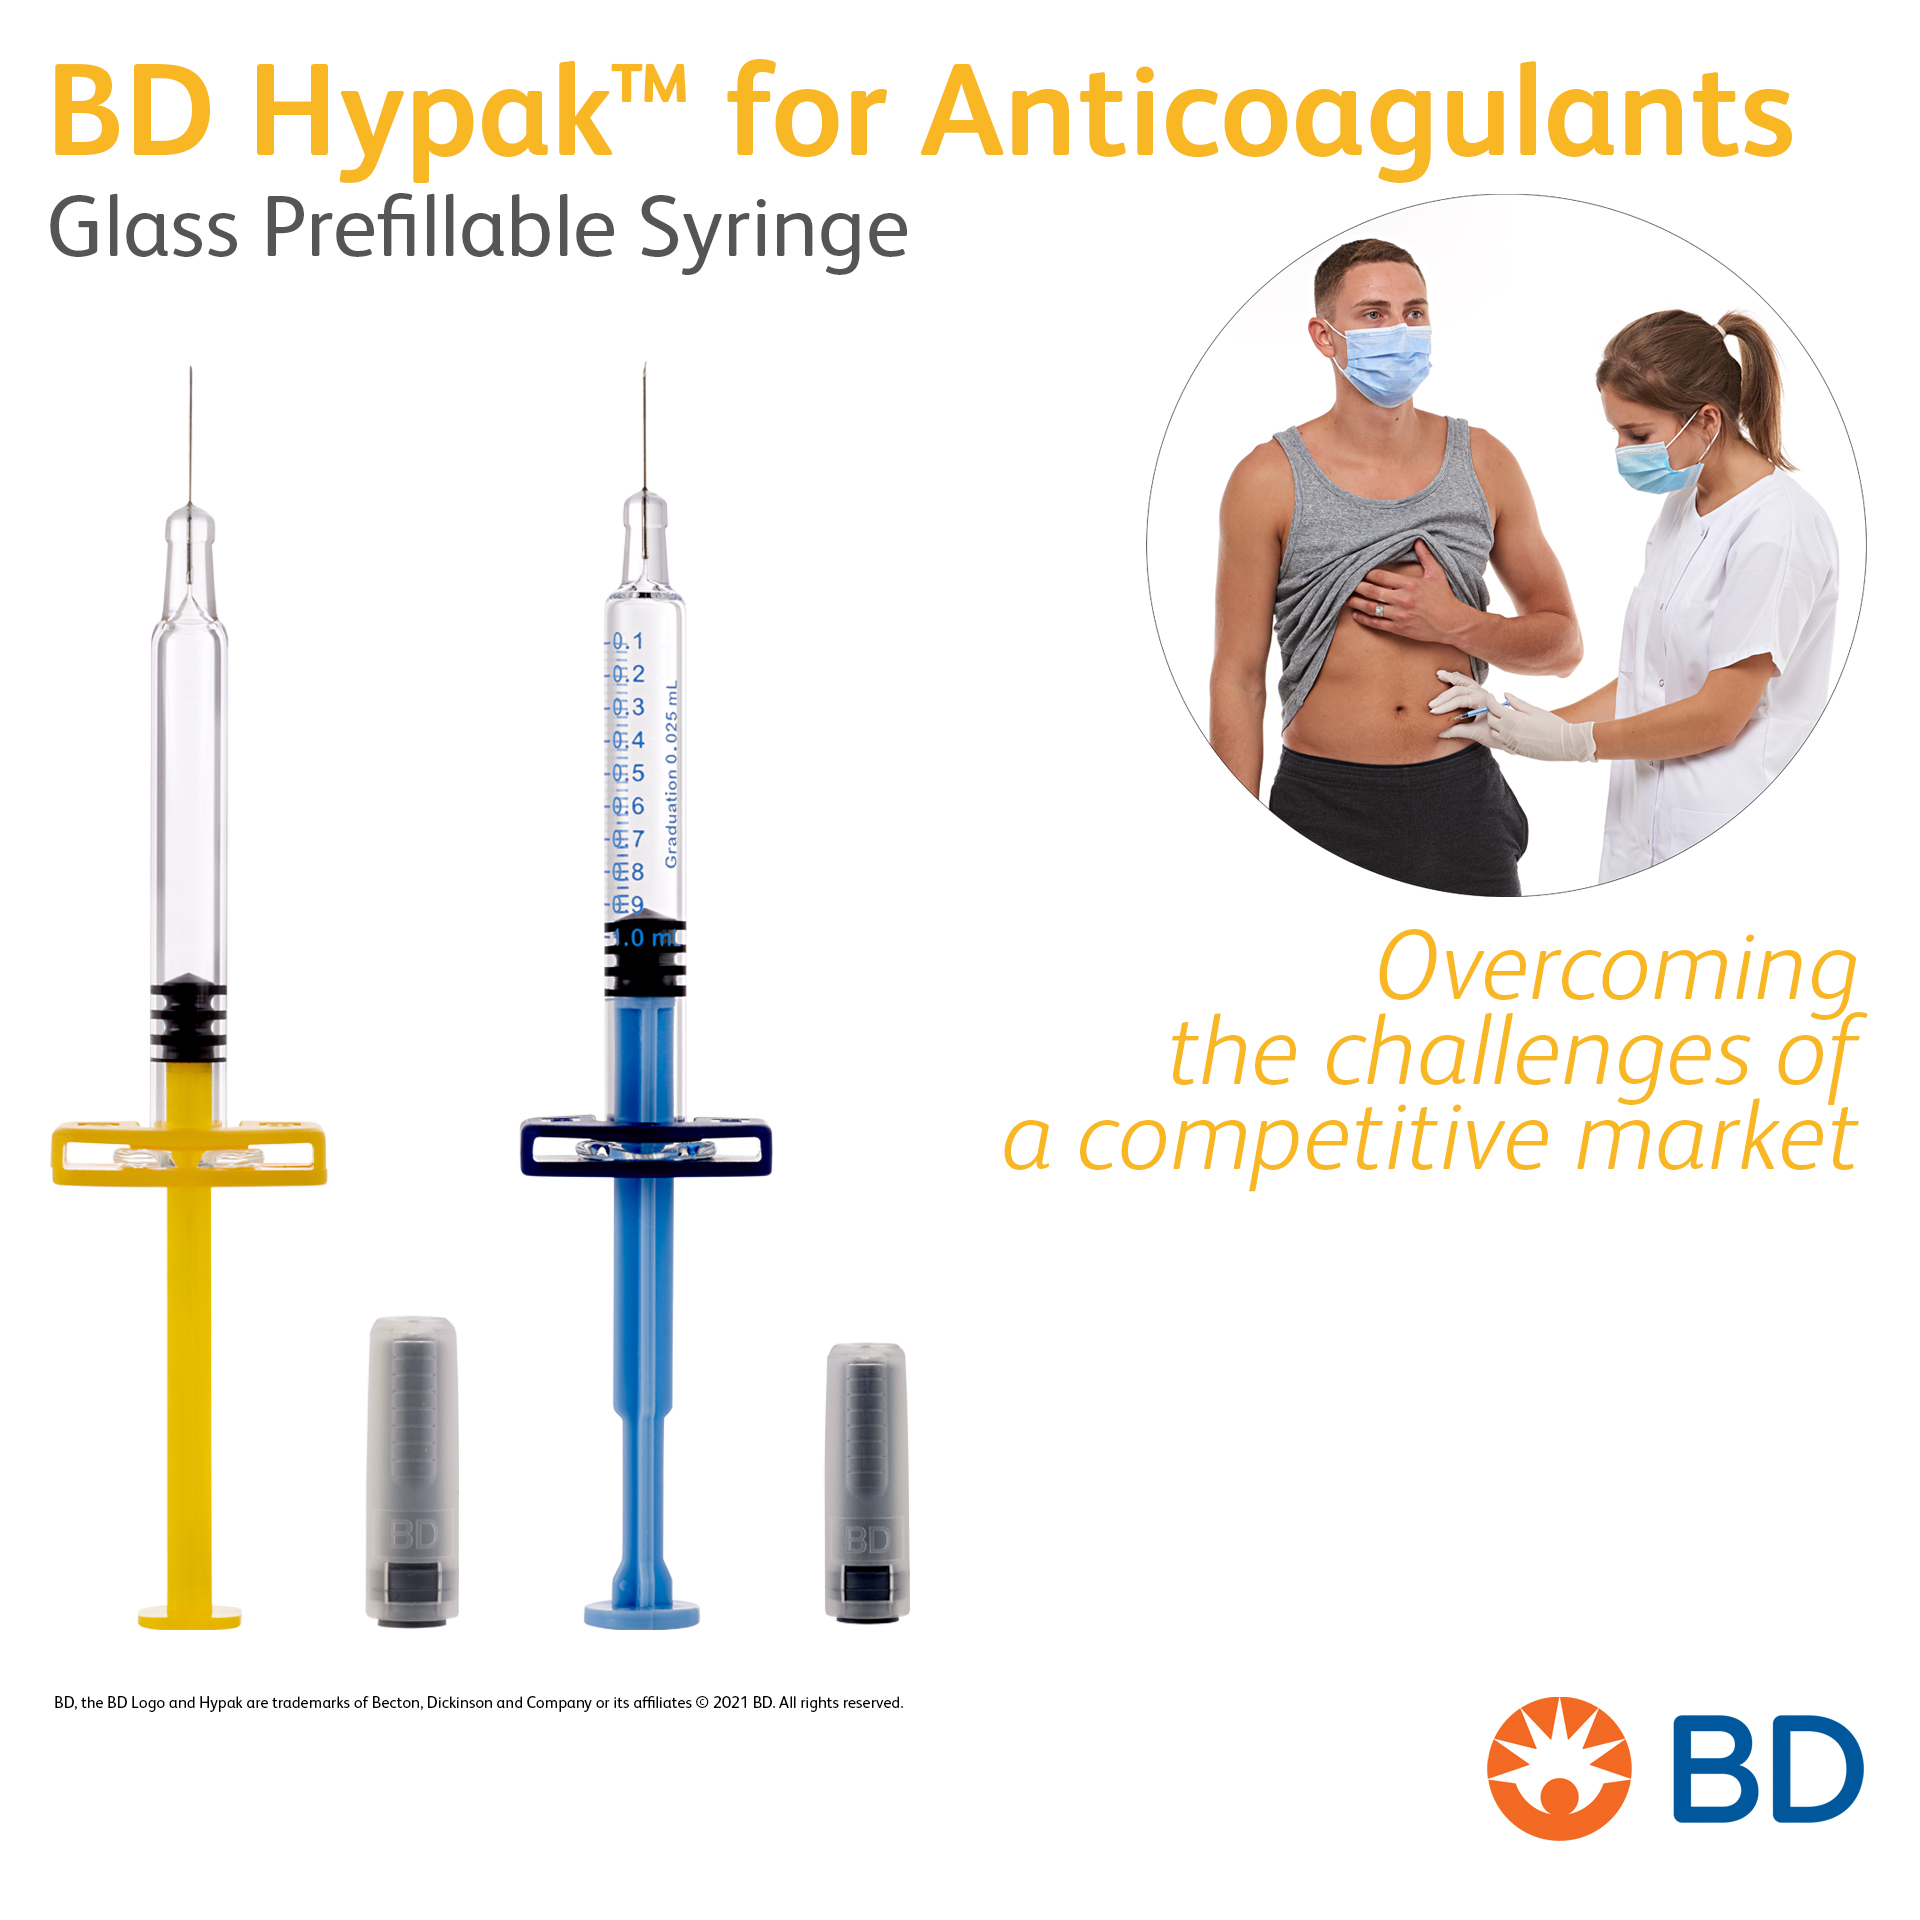 BD Hypak™ for Anticoagulants Glass Prefillable Syringe